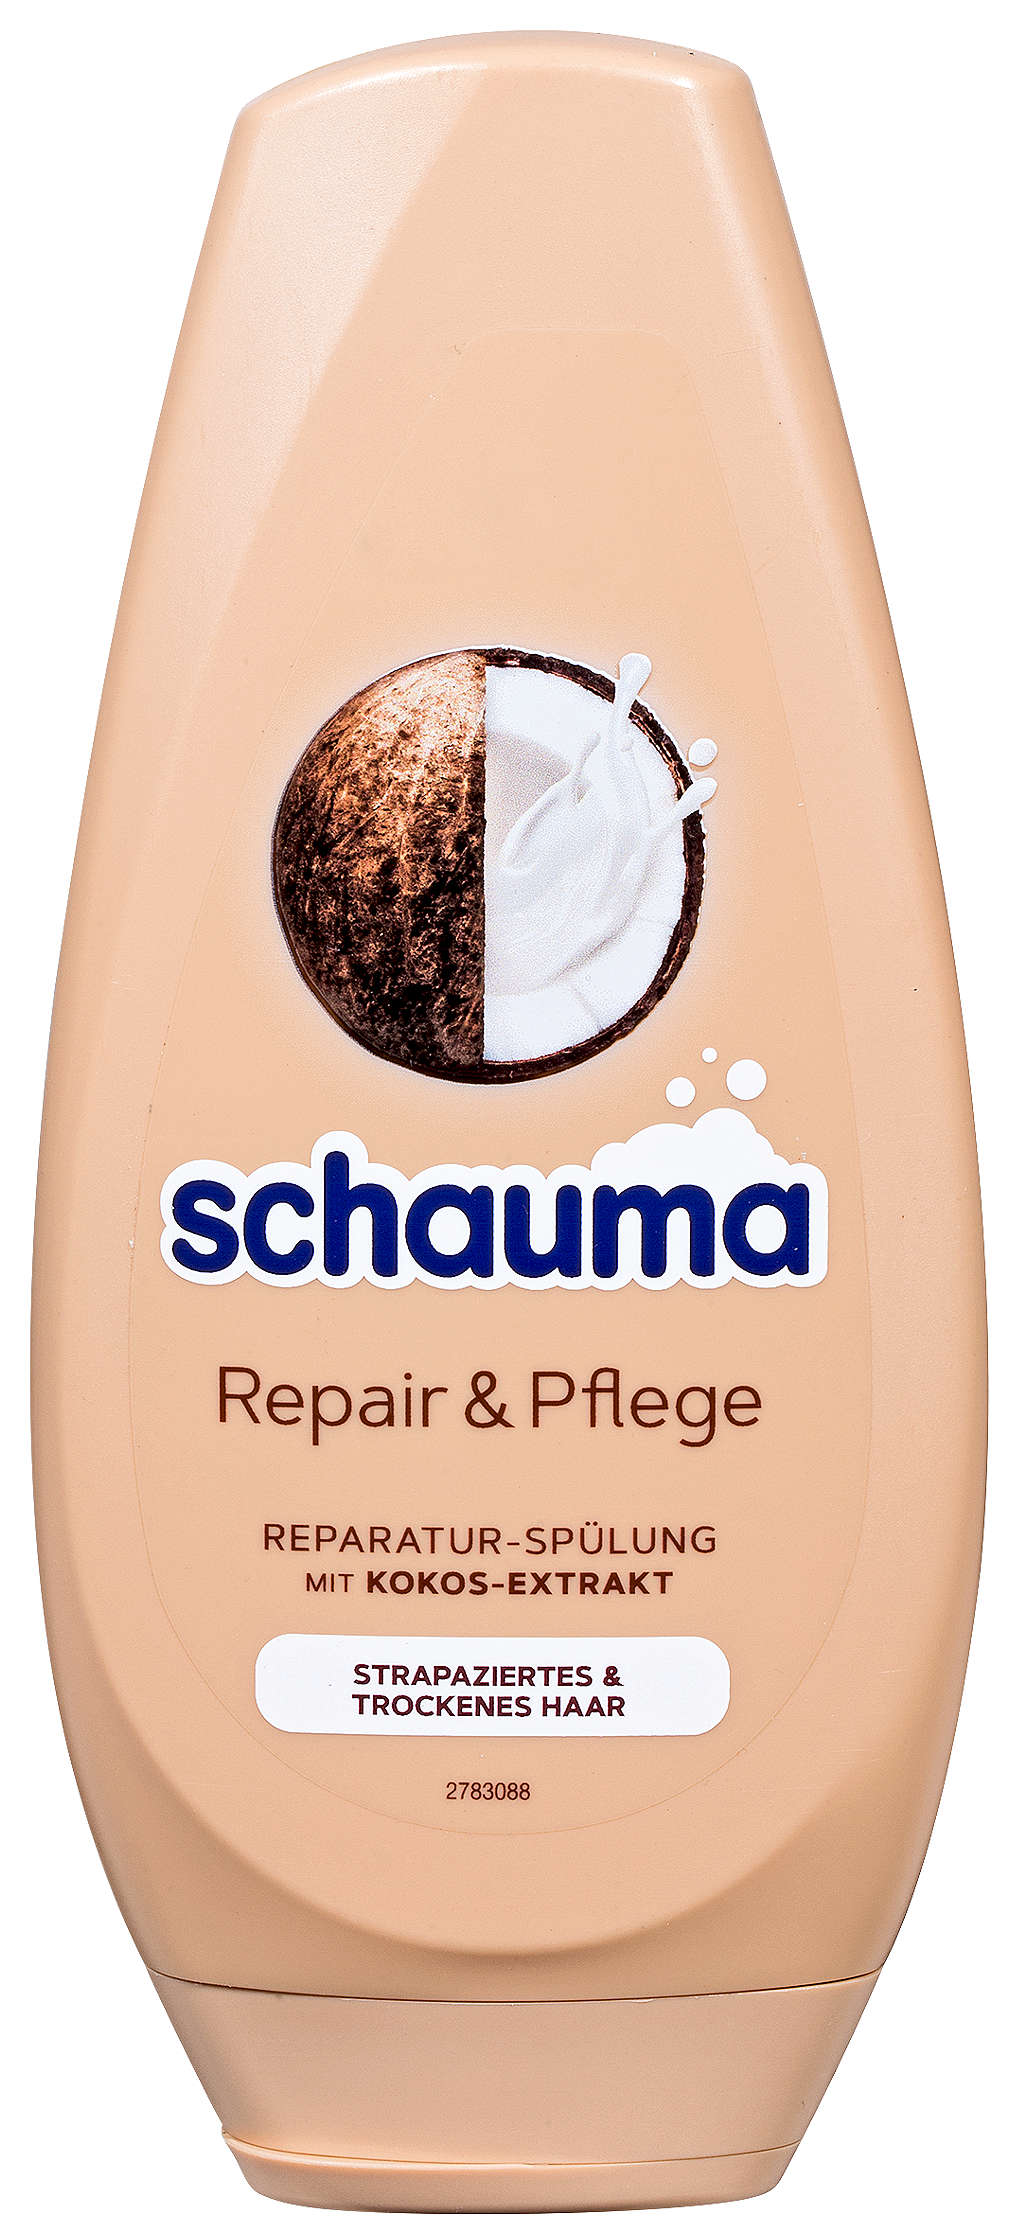 Abbildung des Angebots SCHAUMA Shampoo oder Spülung 